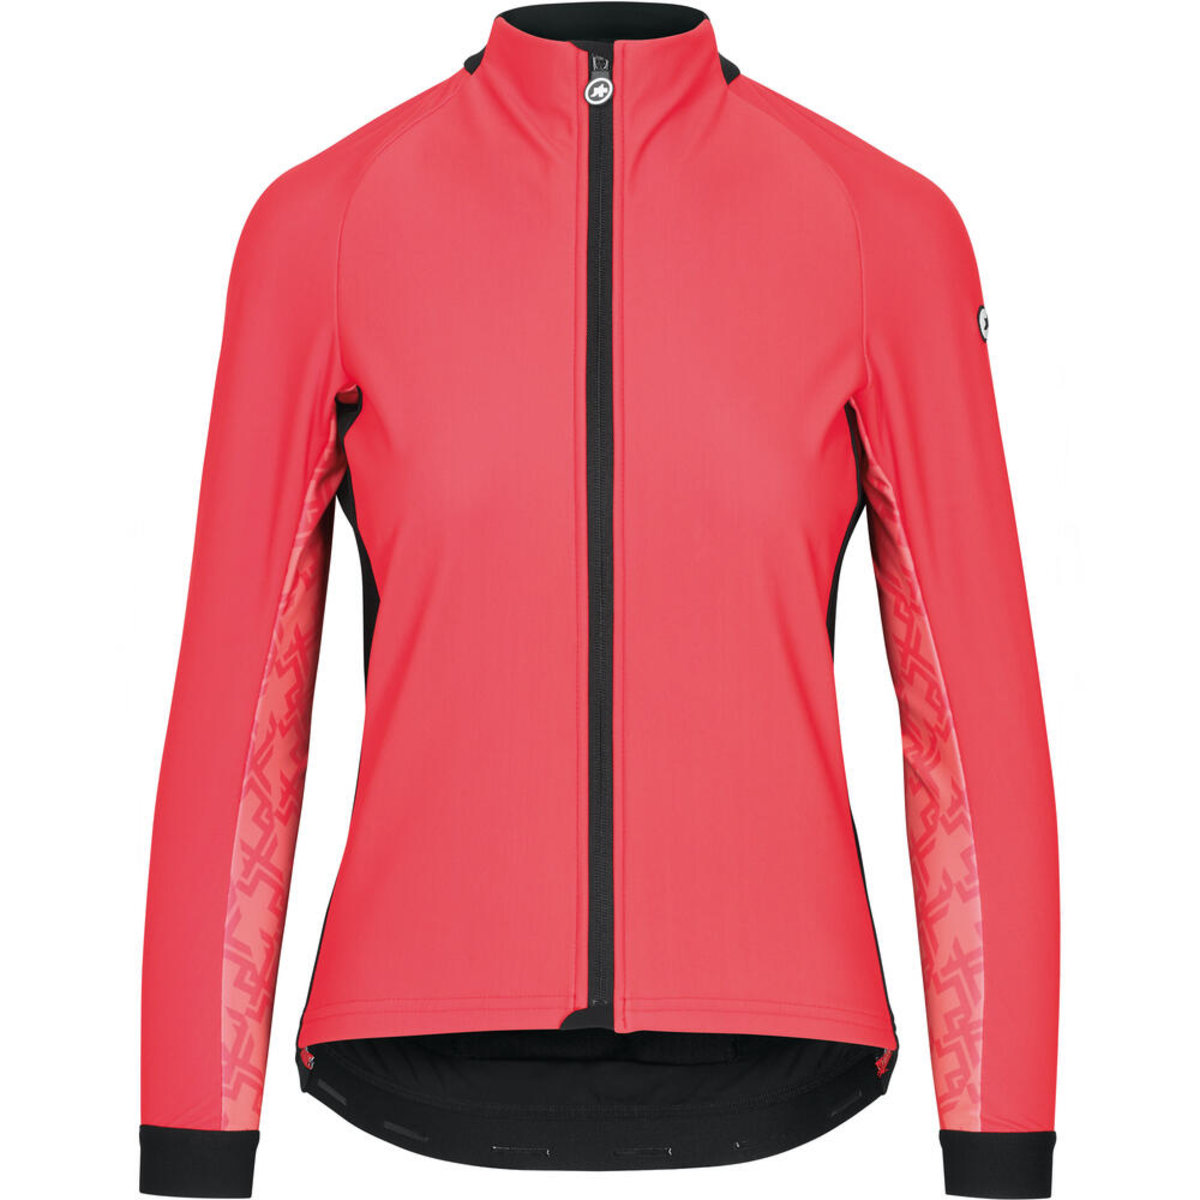 Куртка ASSOS Uma GT Wind Jacket, довг. рукав, женская, рожева, XS фото 